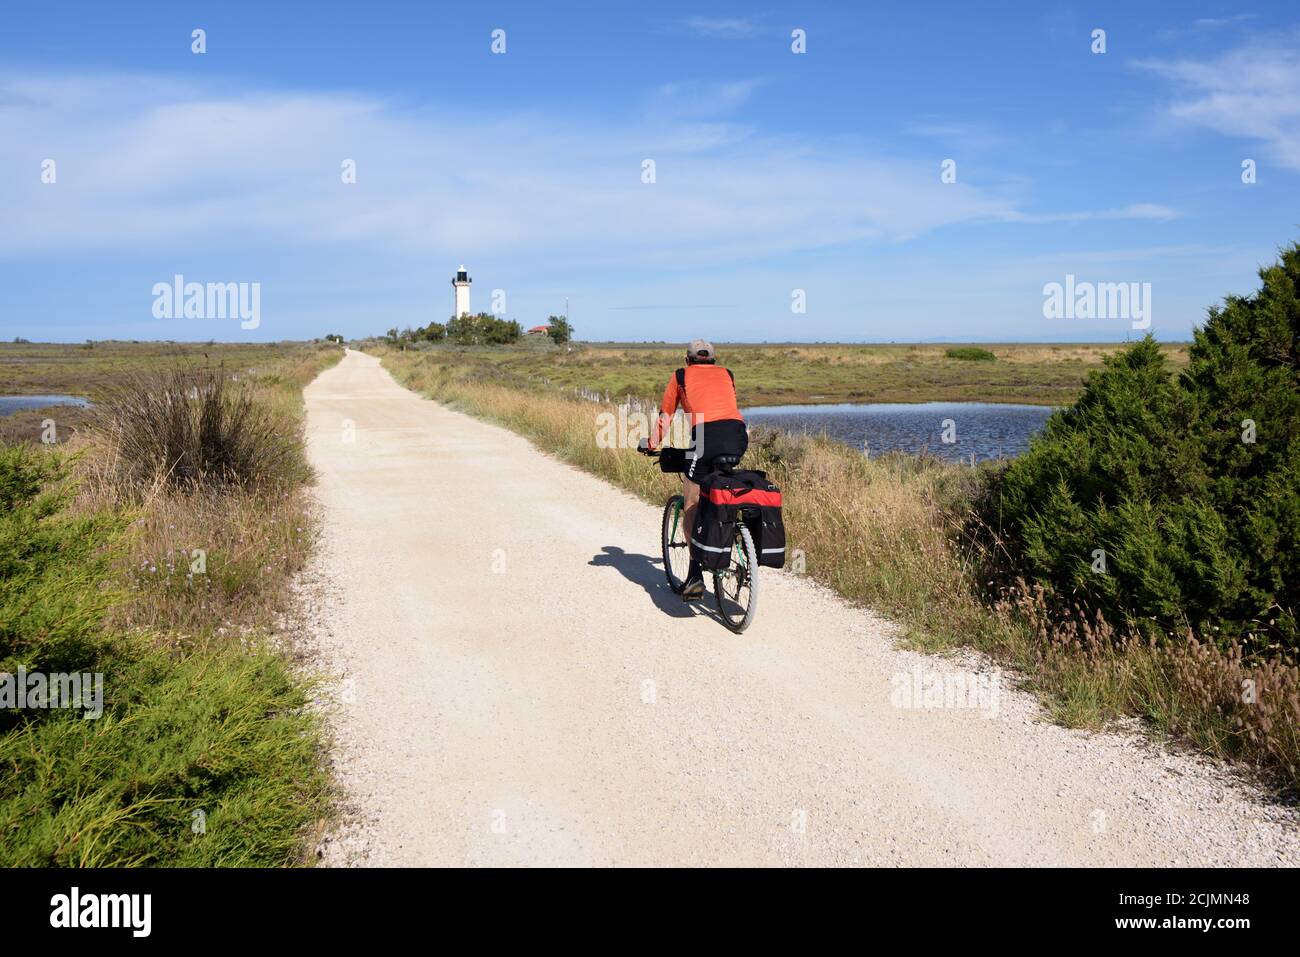 Cycliste sur piste cyclable le long de la Digue à la Mer Ou sentier côtier de Dyke de Gacholle à la Camargue des Saintes-Maries-de-la-Mer Provence France Banque D'Images